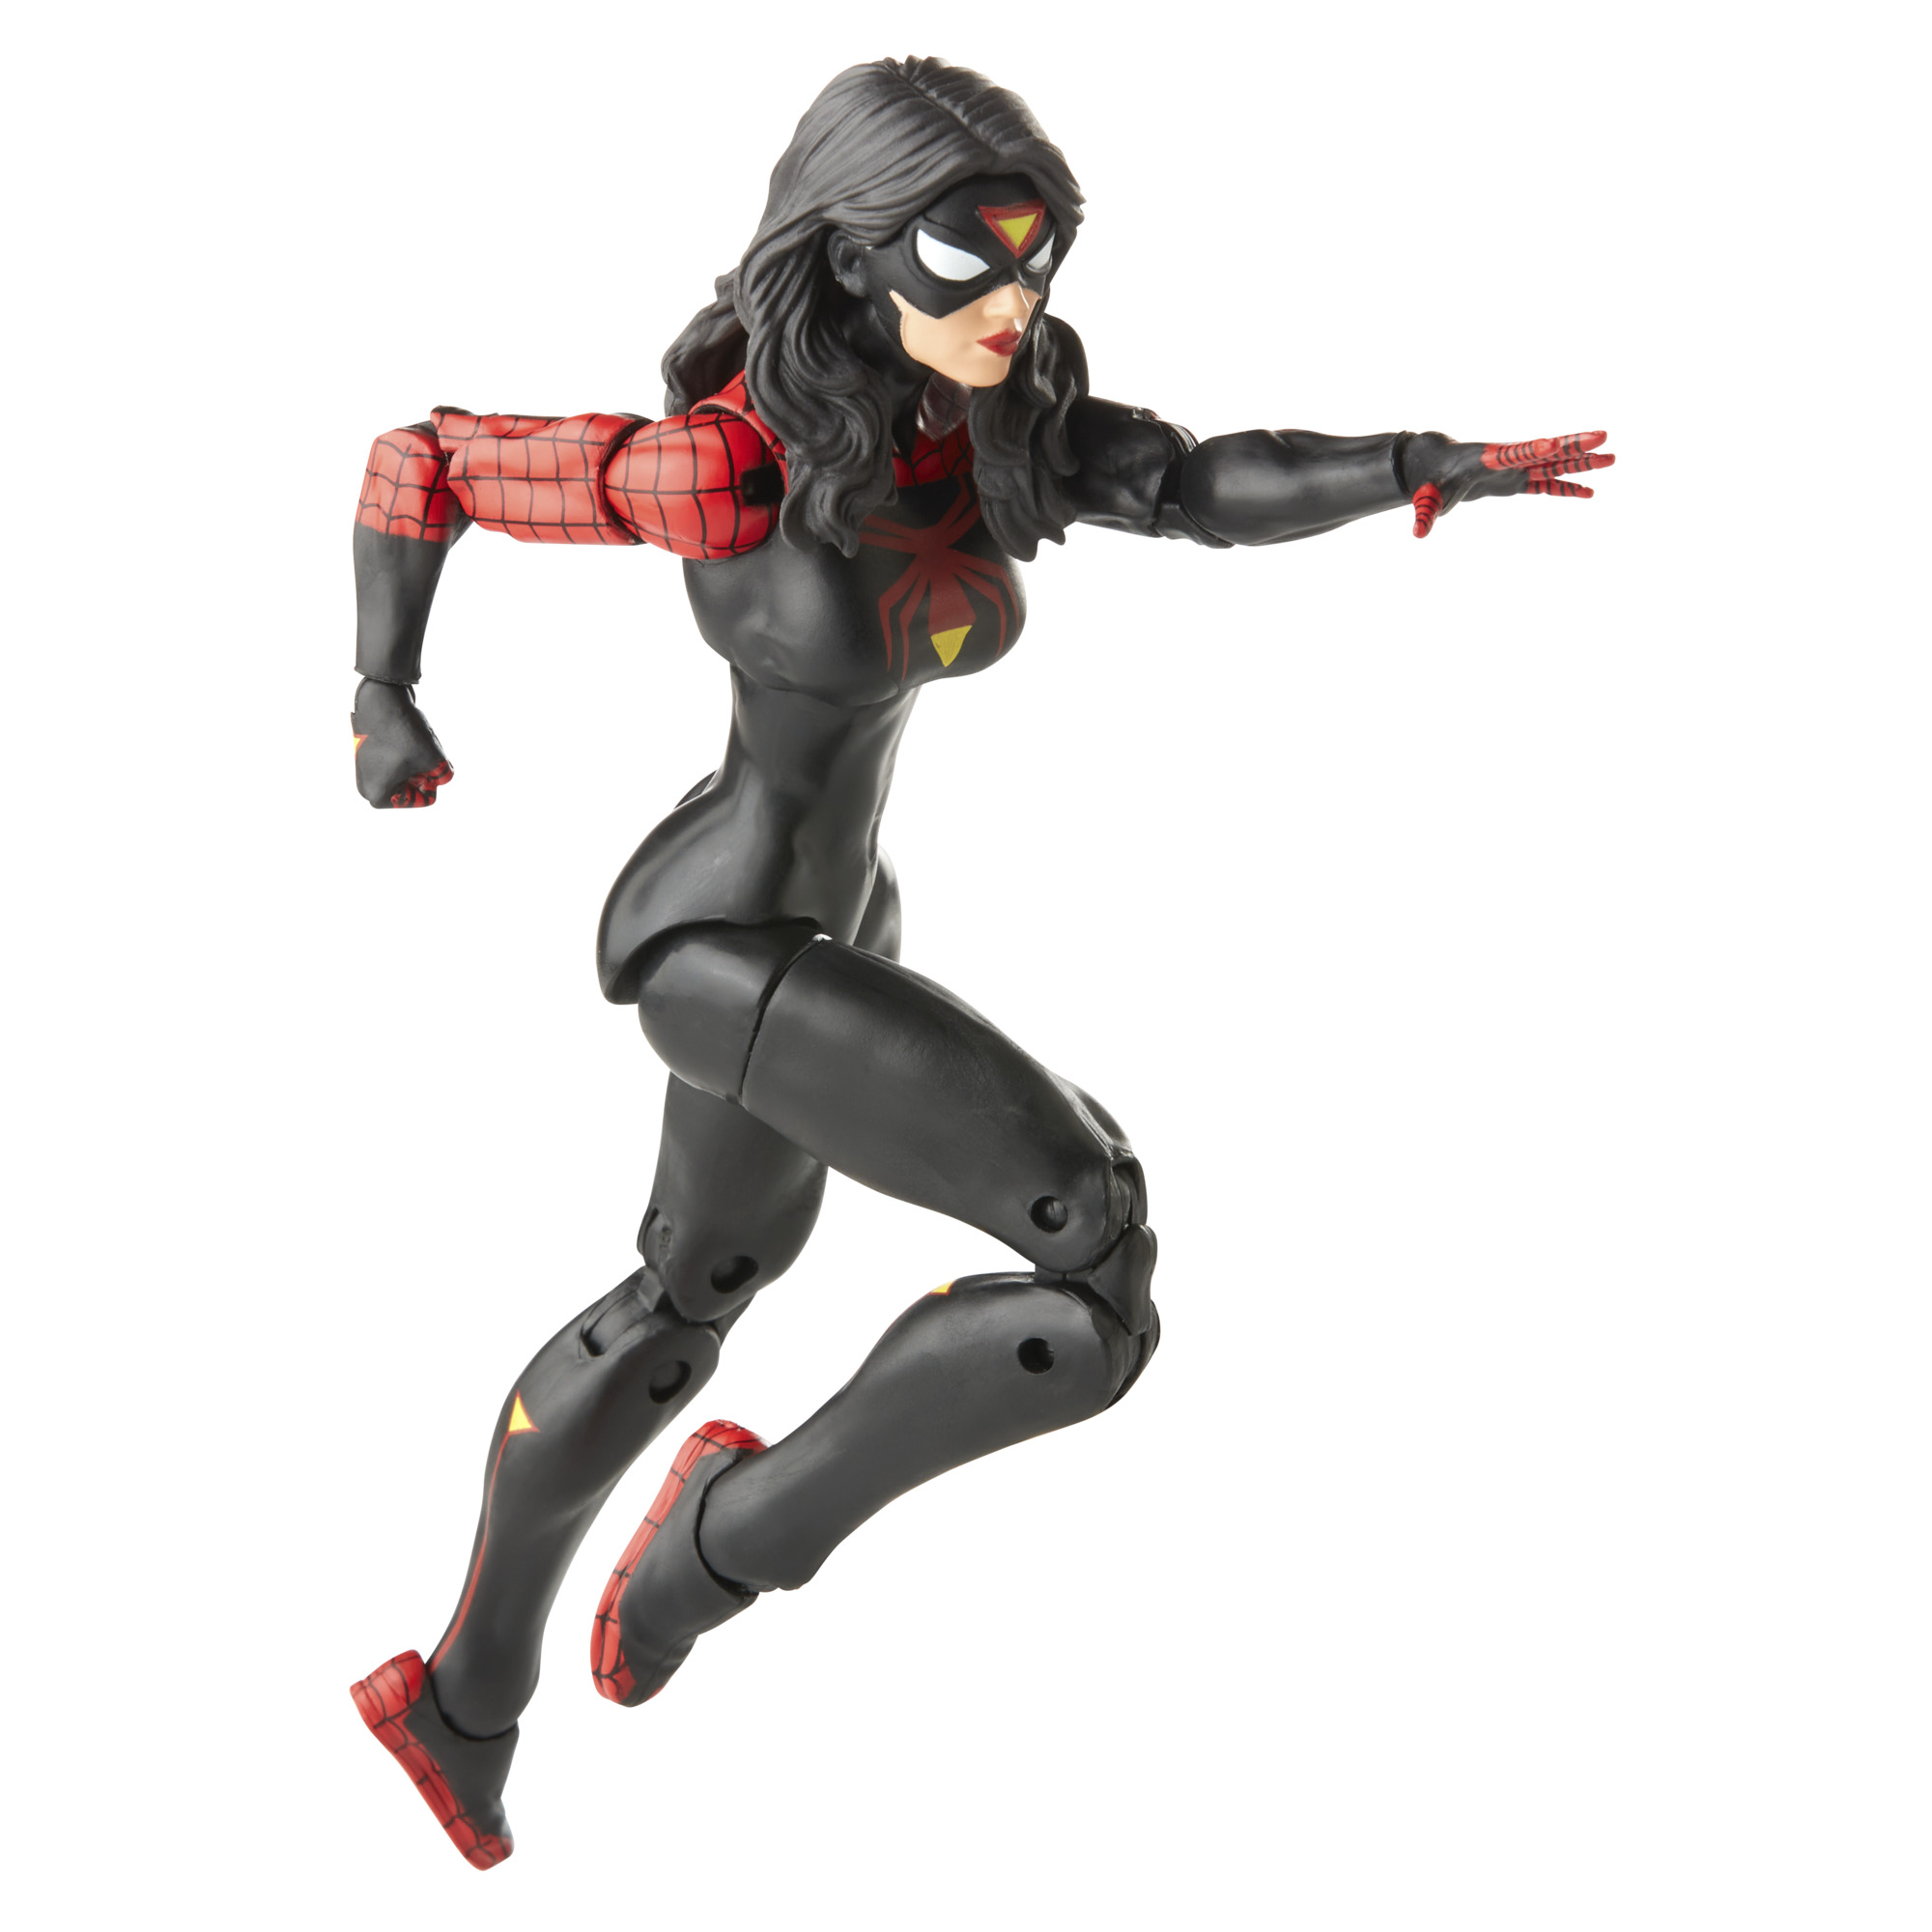 SpiderWoman Legends Marvel Retro SPIDER-MAN Actionfigur Jessica Collection Drew